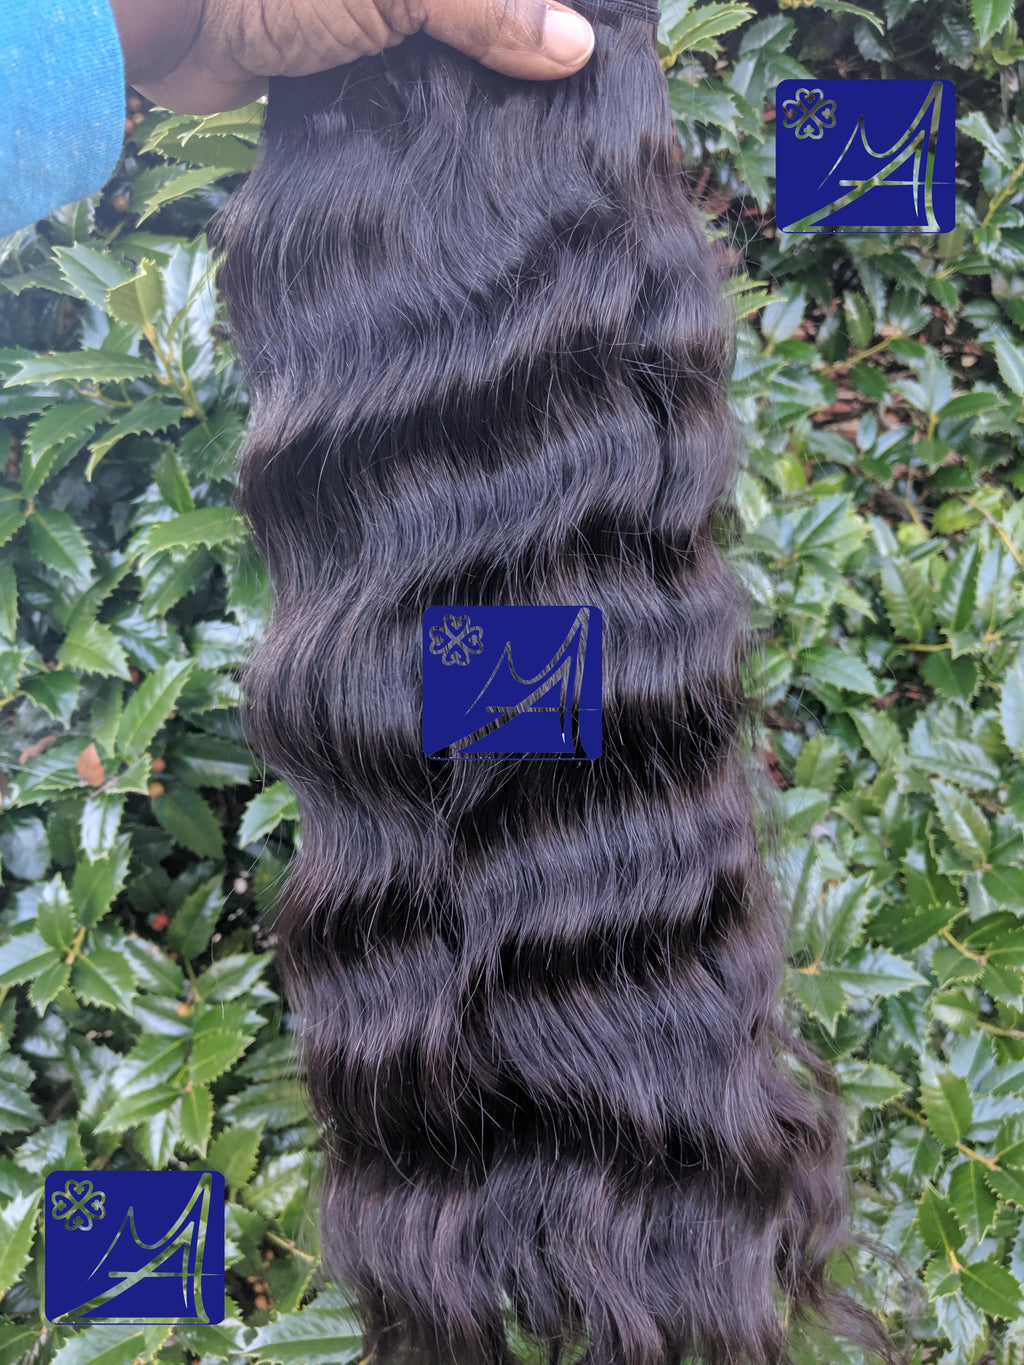 Burmese Hair - Modern Angles HAIR